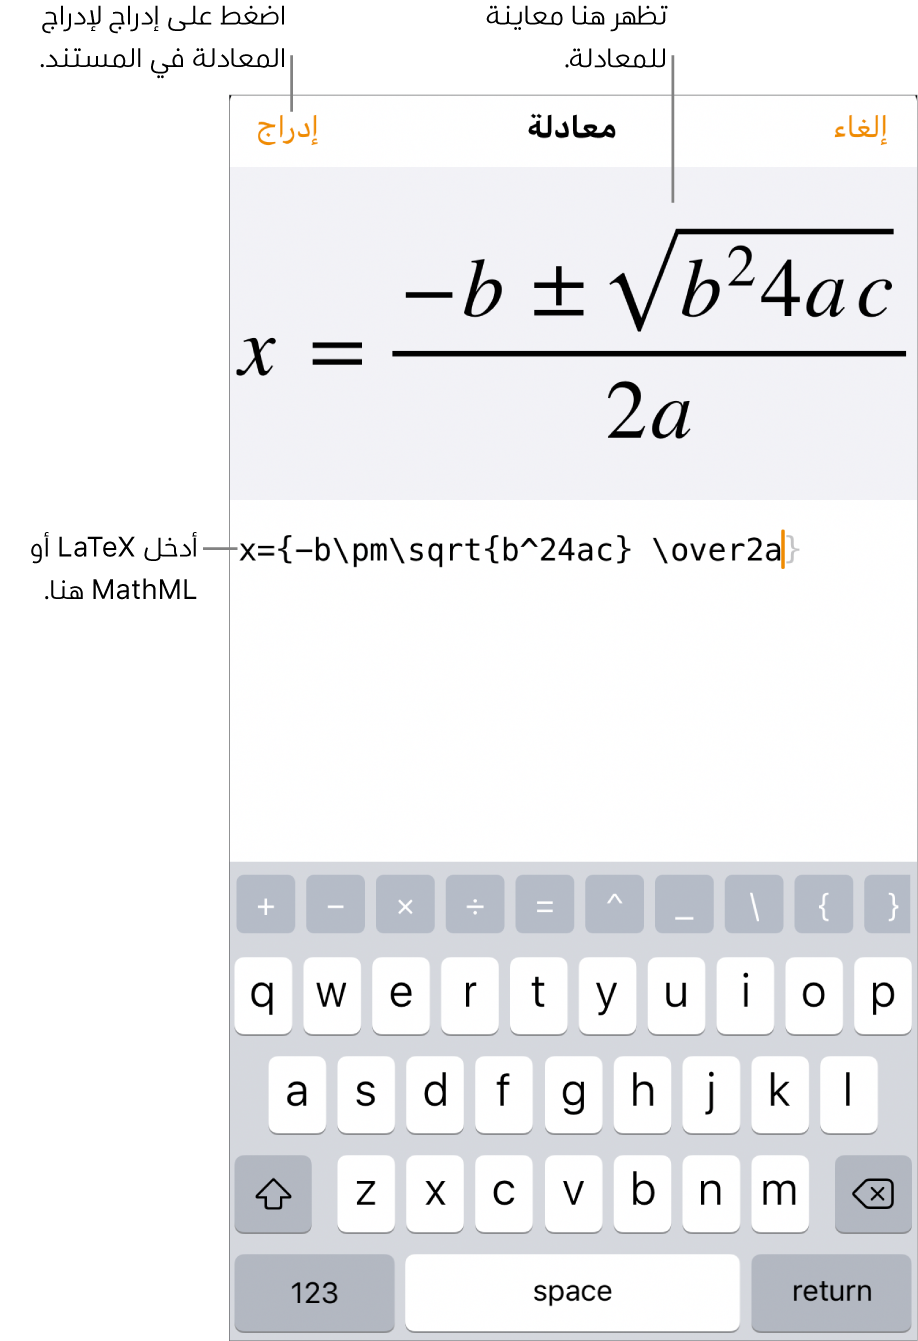 مربع حوار المعادلة يوضح الصيغة التربيعية مكتوبة باستخدام أوامر LaTeX ويظهر بالأعلى معاينة للمعادلة.